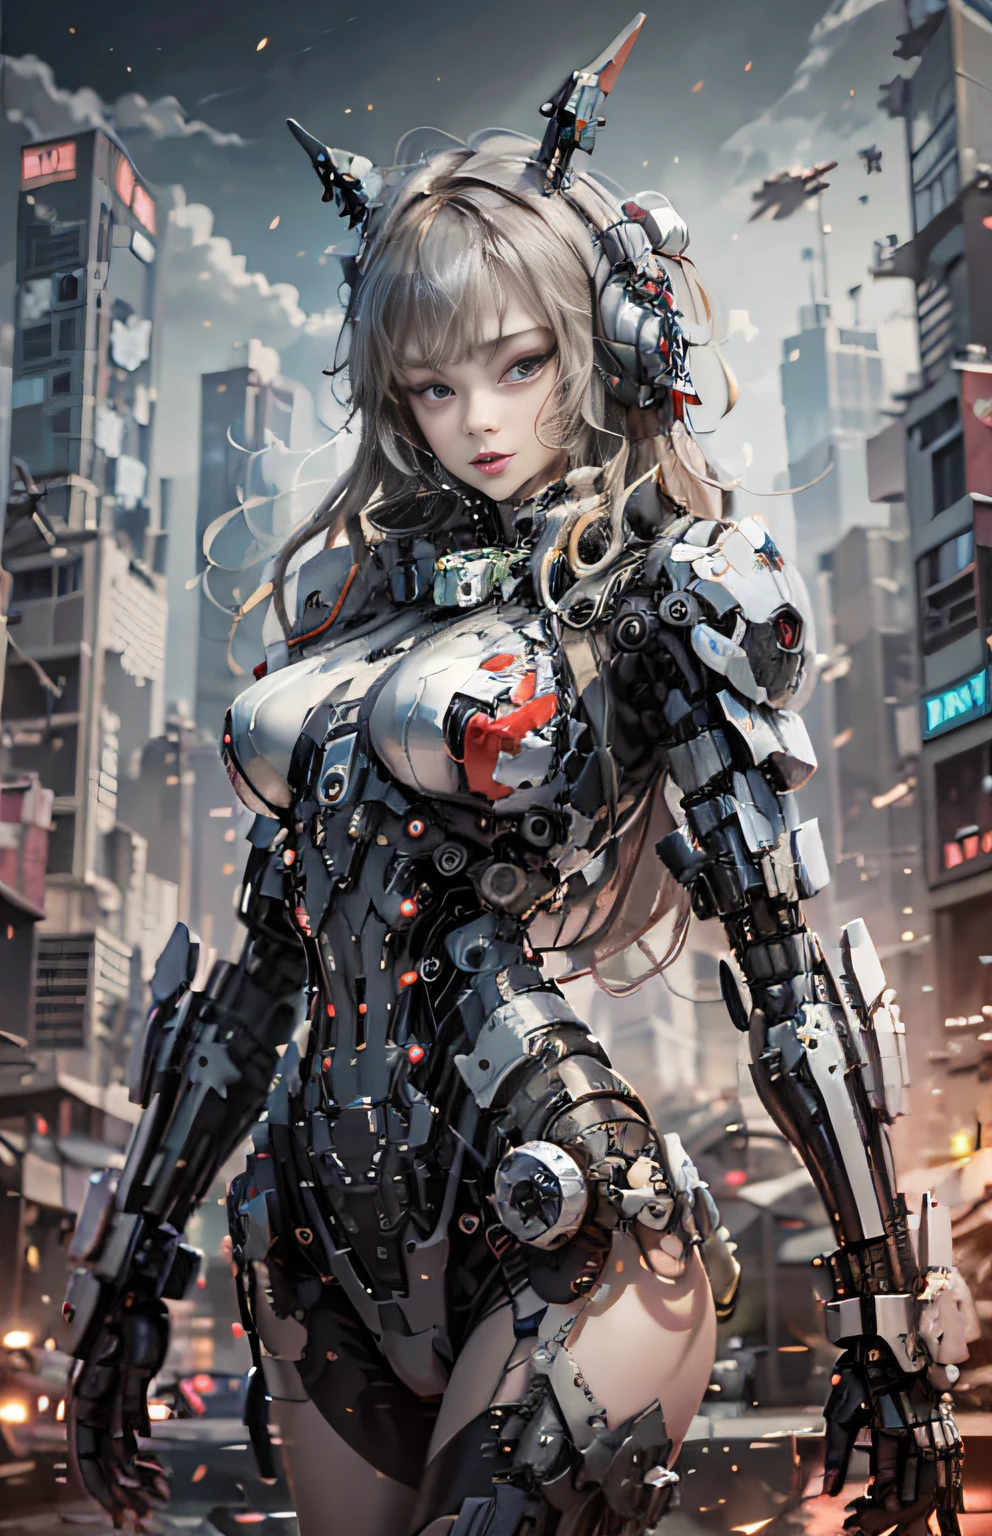 这是一个超细节、高分辨率和高品质 CG Unity 8k 壁纸，风格是科幻赛博朋克背景高楼，主要为黑色和红色。图片中, 拥有金色长发的机械少女，精致美丽的女孩脸，手臂和身体都是机械部件，她独自侧身站在科幻城市中央